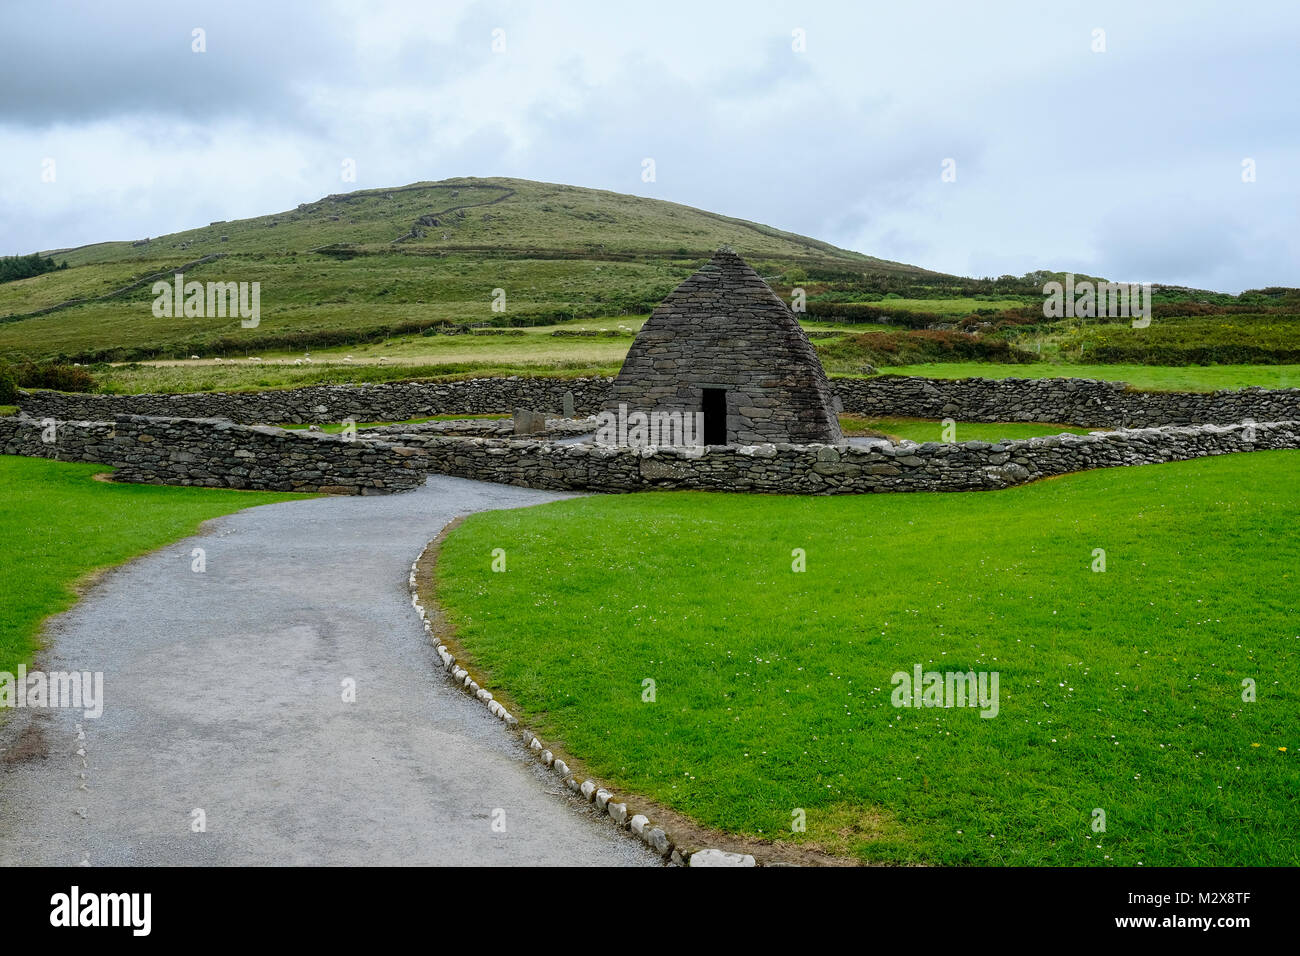 Irland. Ein clochán - Beehive Hut - ist ein Trocken-Hütte aus Stein mit einer Auskragung Dach, die in der Regel mit der süd-westlichen Irischen seaboard verbunden. Die genaue Co Stockfoto